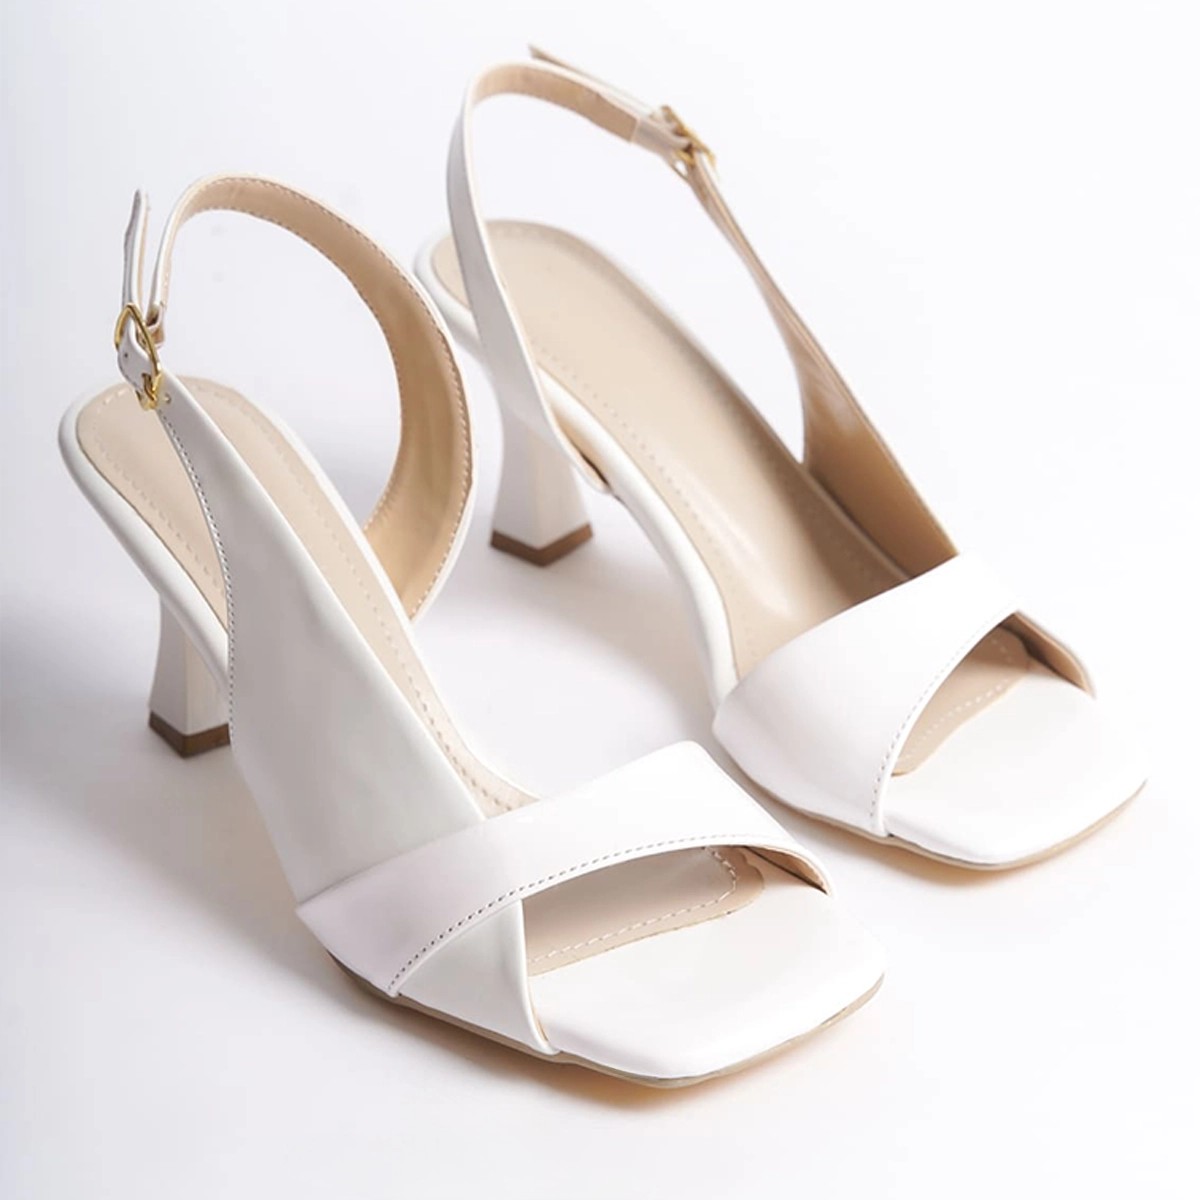 Rugan Bantlı İnce Yüksek Topuklu Ayakkabı - Beyaz